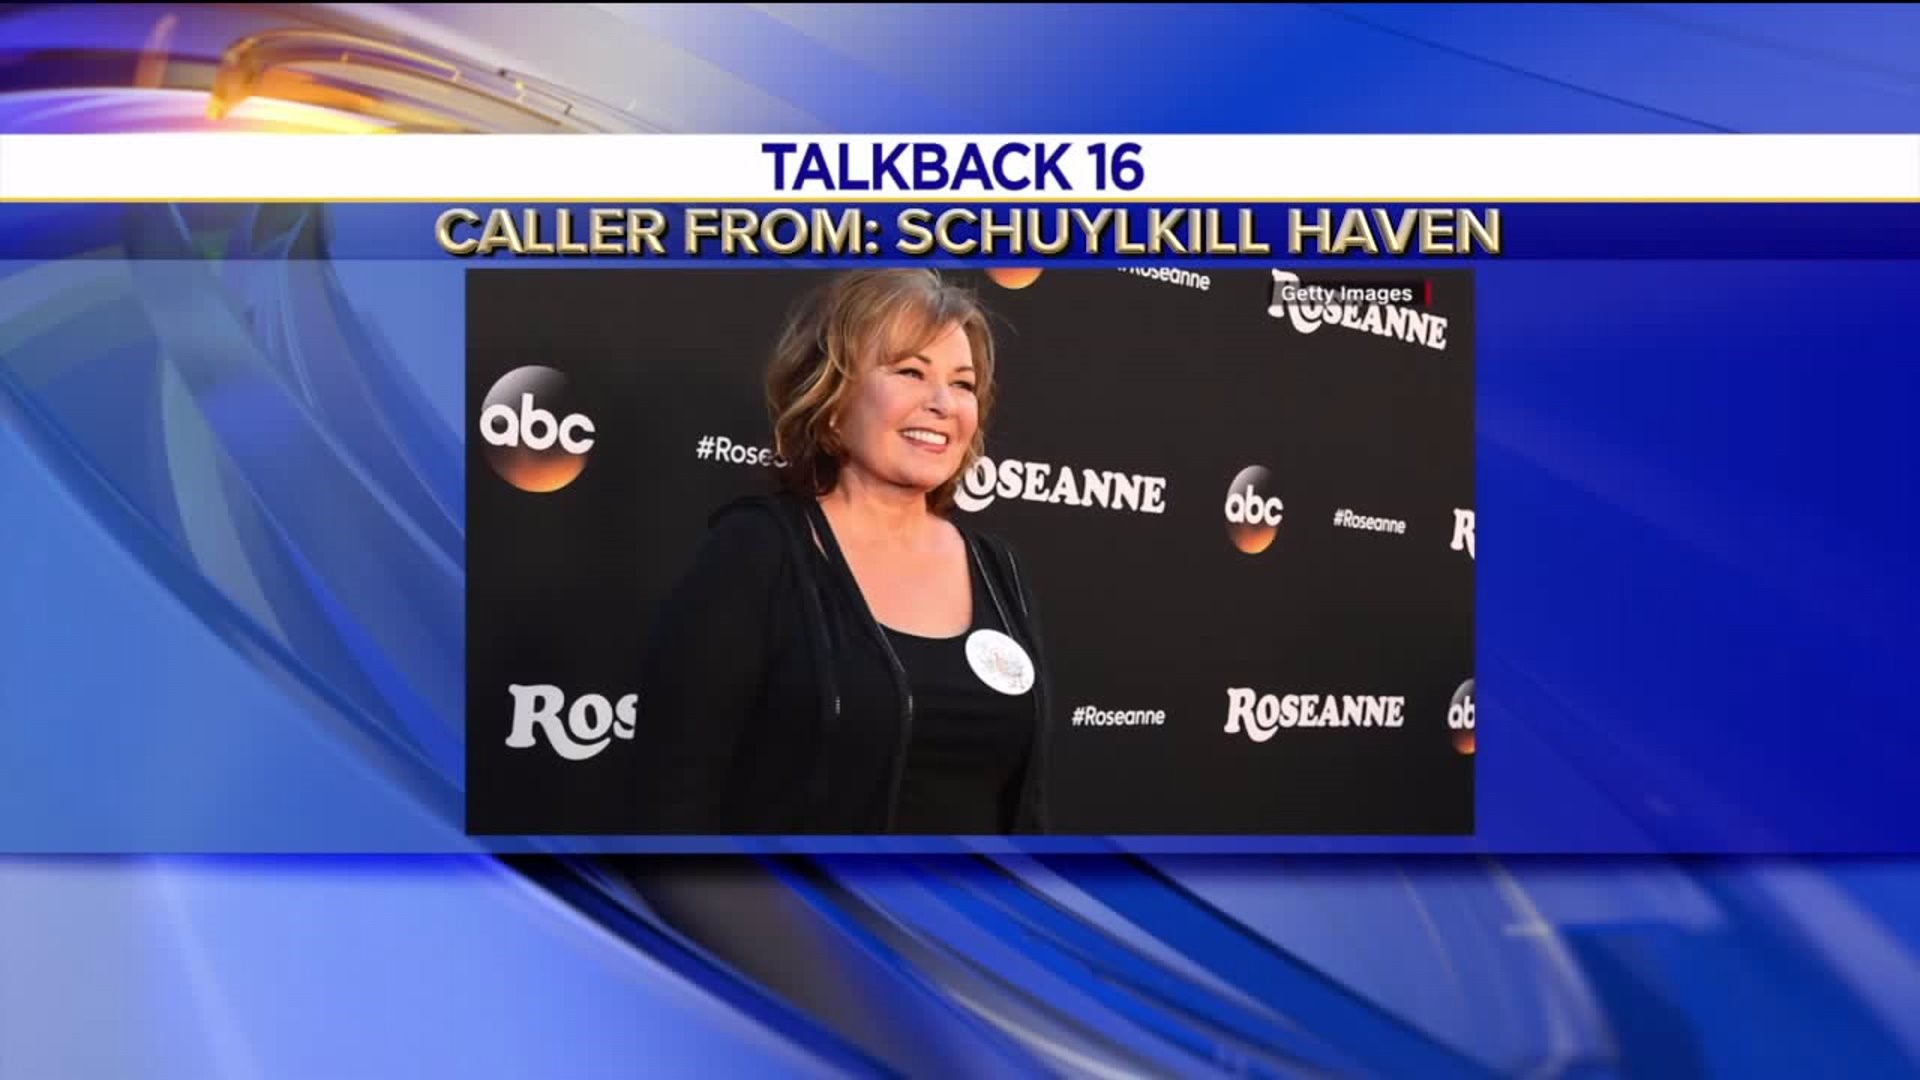 Talkback 16: 'Roseanne' Gets Canned